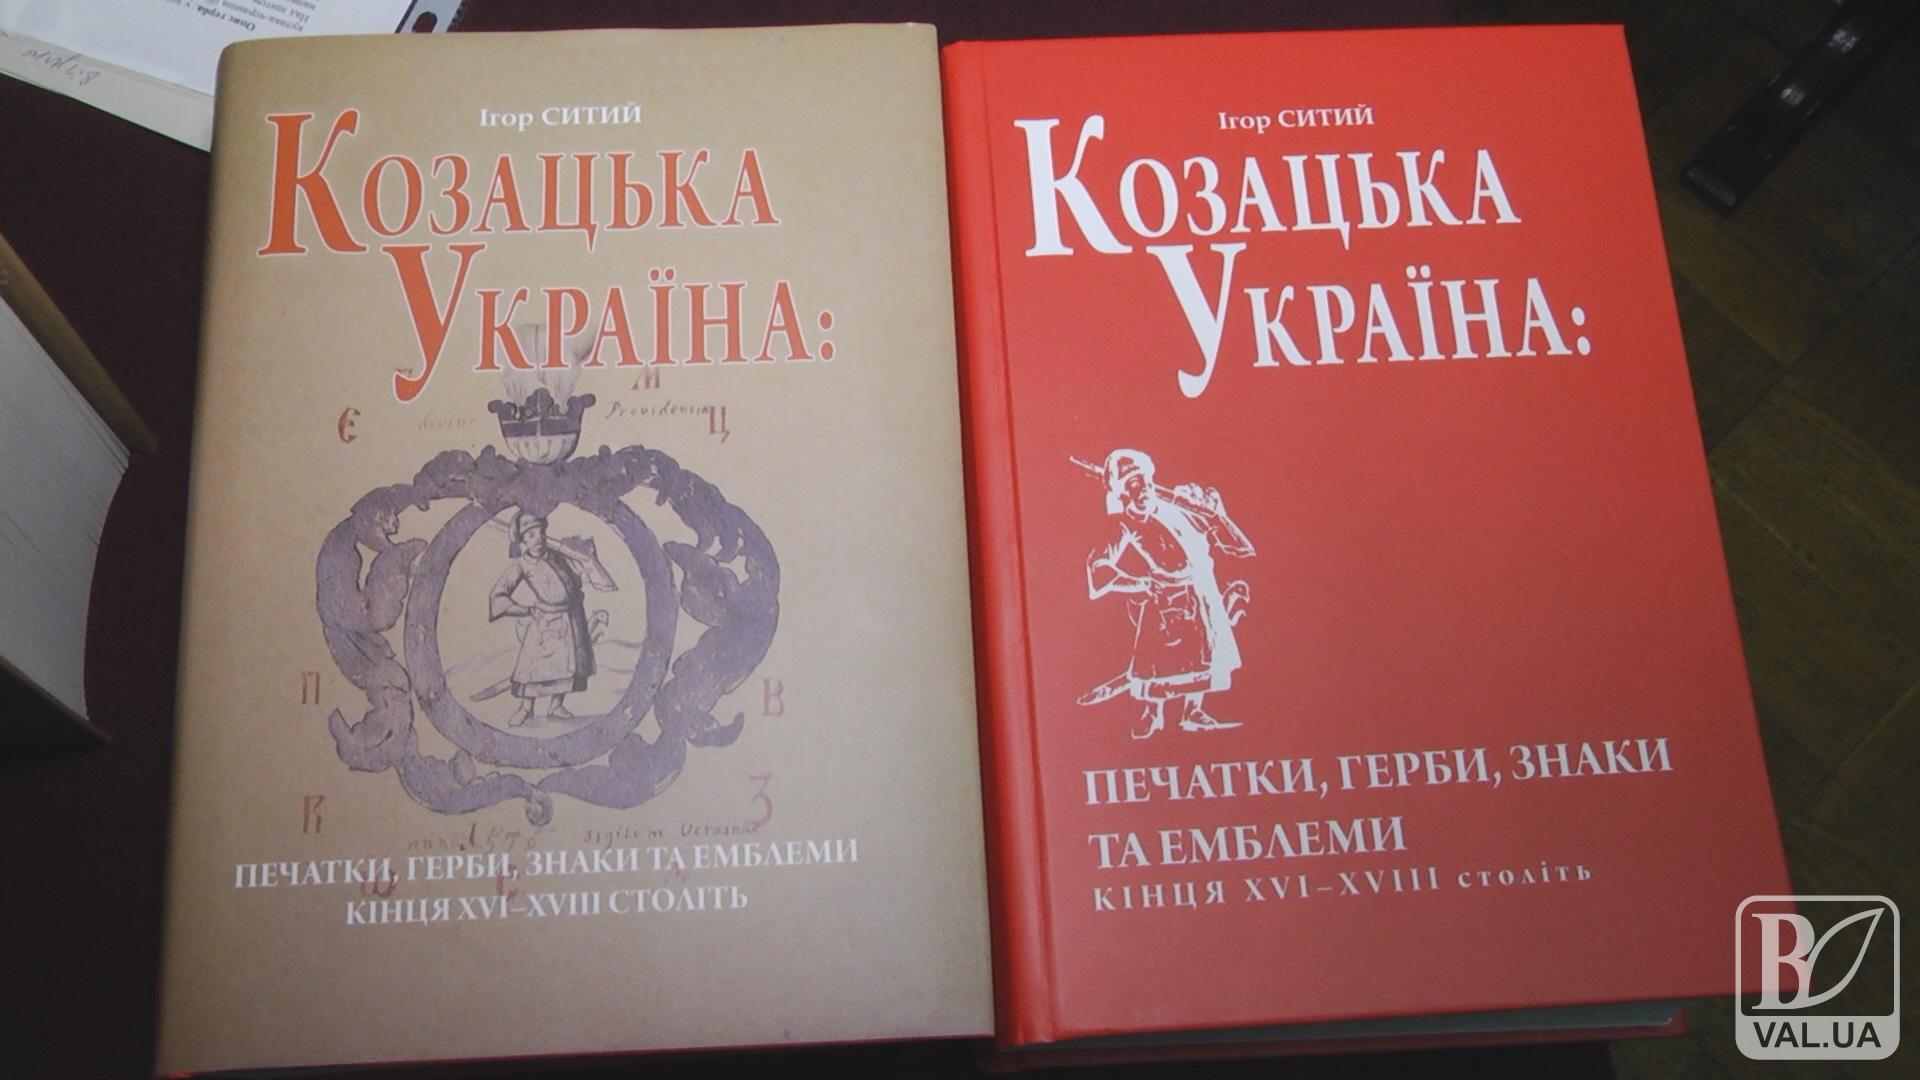  История нации: в Чернигове презентовали книгу Игоря Сытого. ВИДЕО